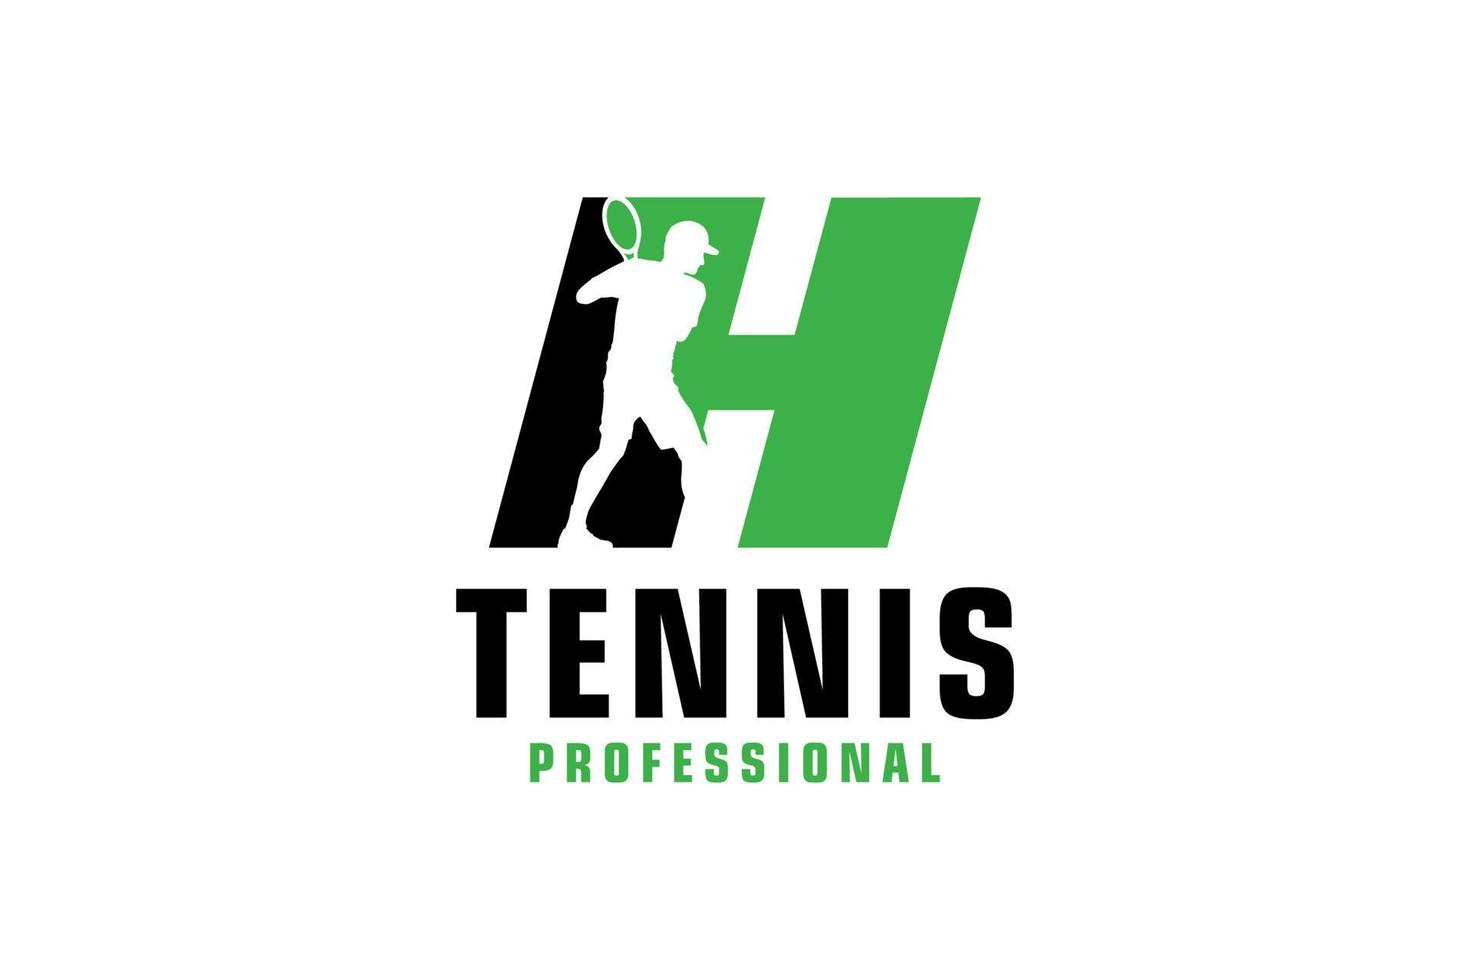 buchstabe h mit tennisspieler-silhouette-logo-design. Vektordesign-Vorlagenelemente für Sportteams oder Corporate Identity. vektor